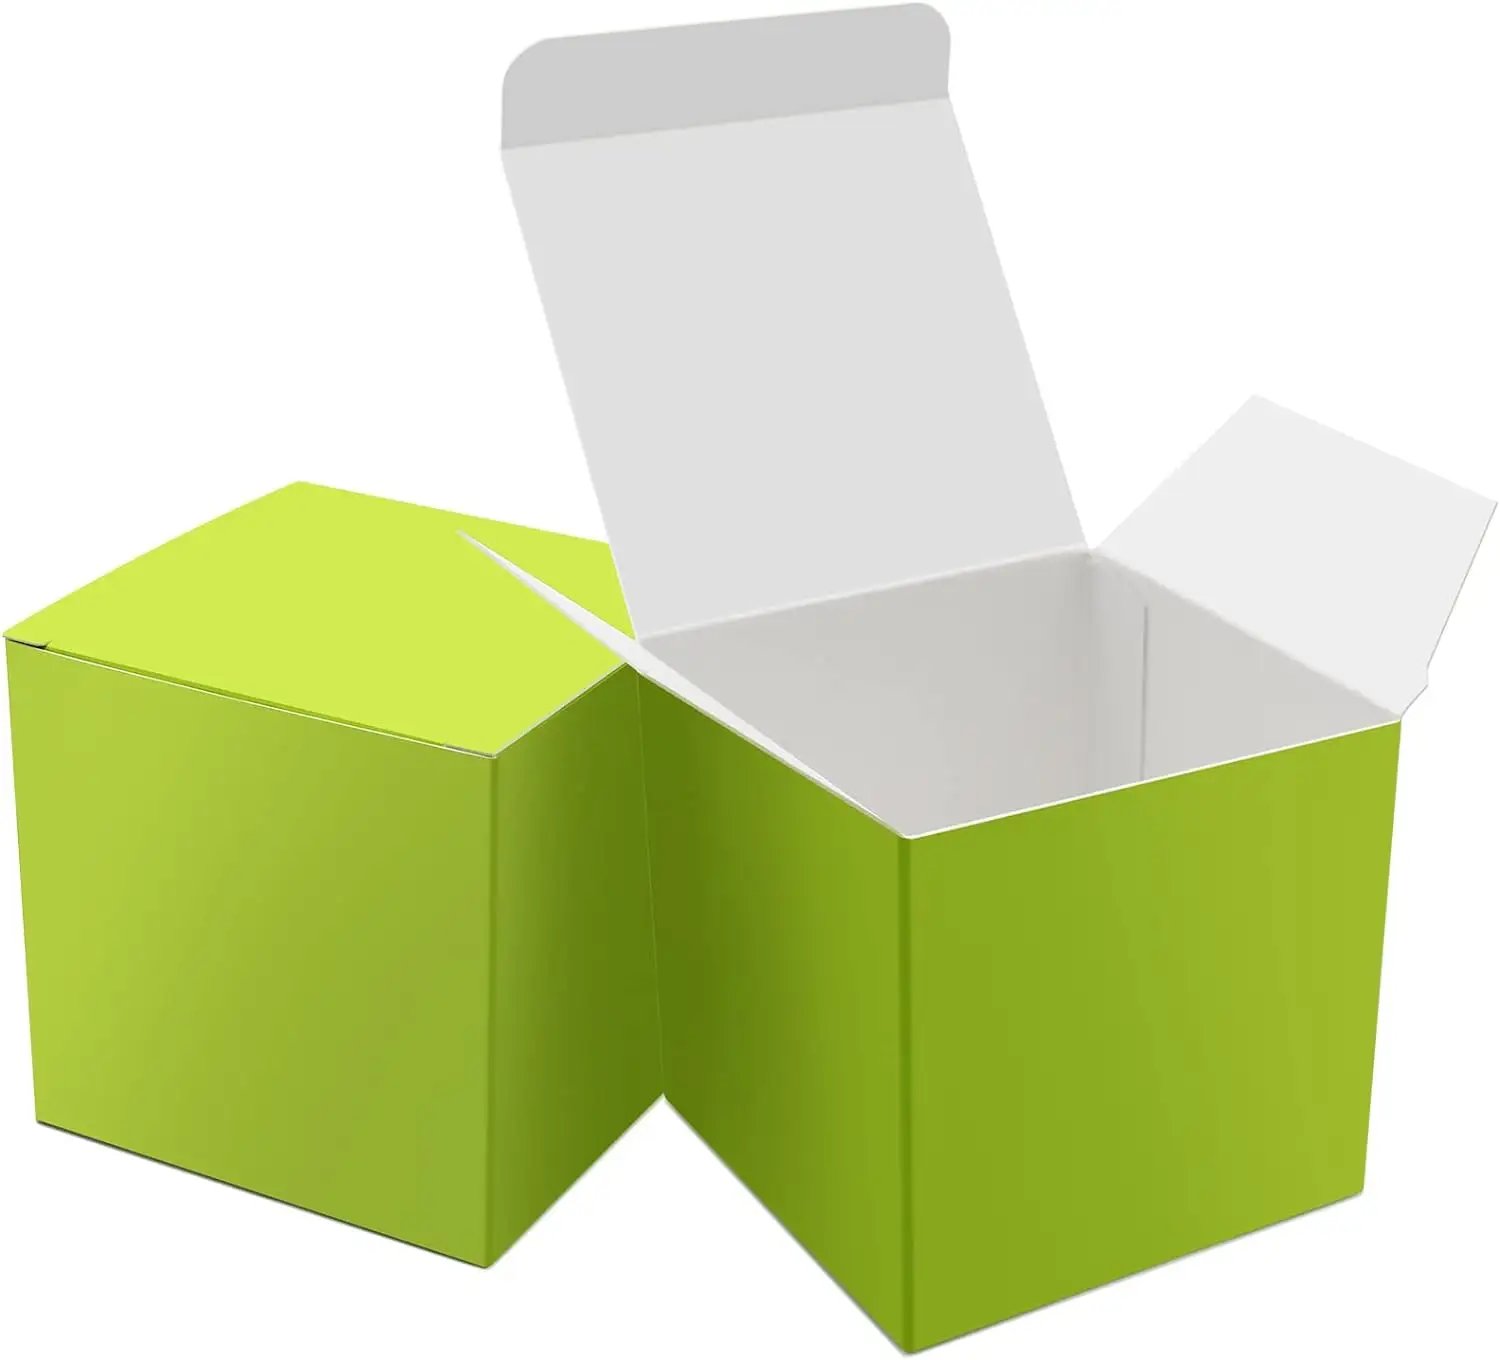 Kotak hadiah kertas hijau kustom kotak permen kecil 3x3x3 inci kotak hadiah dengan tutup kotak hadiah